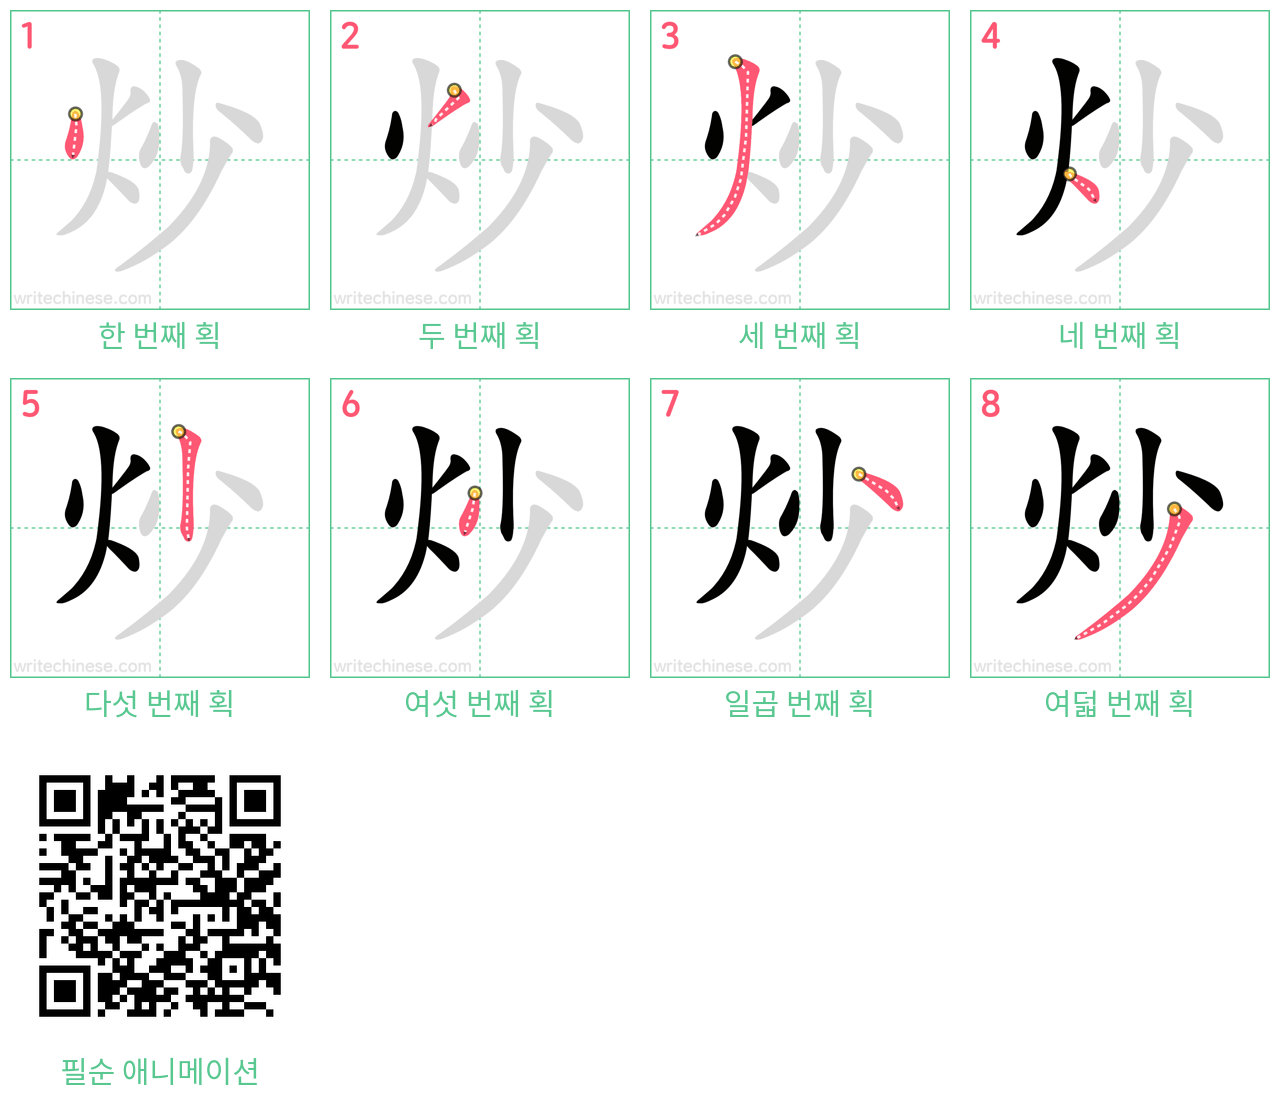 炒 step-by-step stroke order diagrams